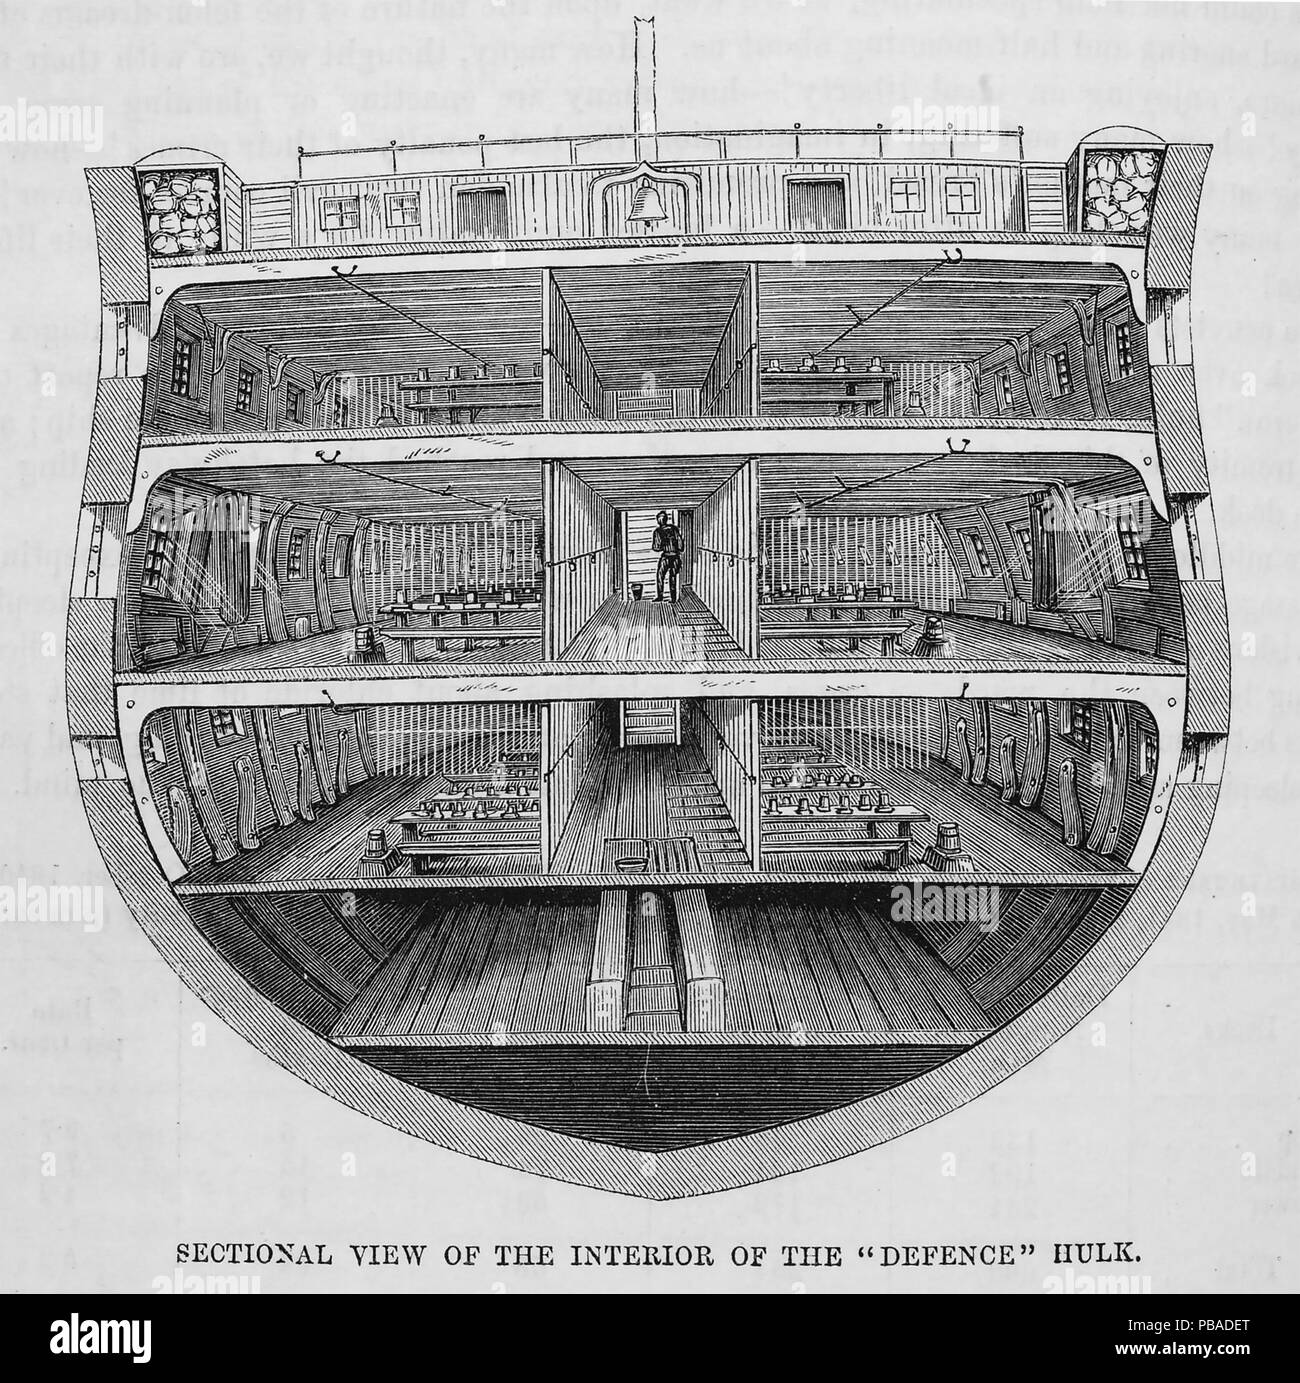 Viktorianische HULK Gefängnisse. Querschnitt der De-Beauftragte 74-gun Dritte Rate Schiff "Verteidigung" als Hulk Gefängnis Schiff in Woolwich und Portsmoutyh von 1850 bis 1857 verwendet Stockfoto